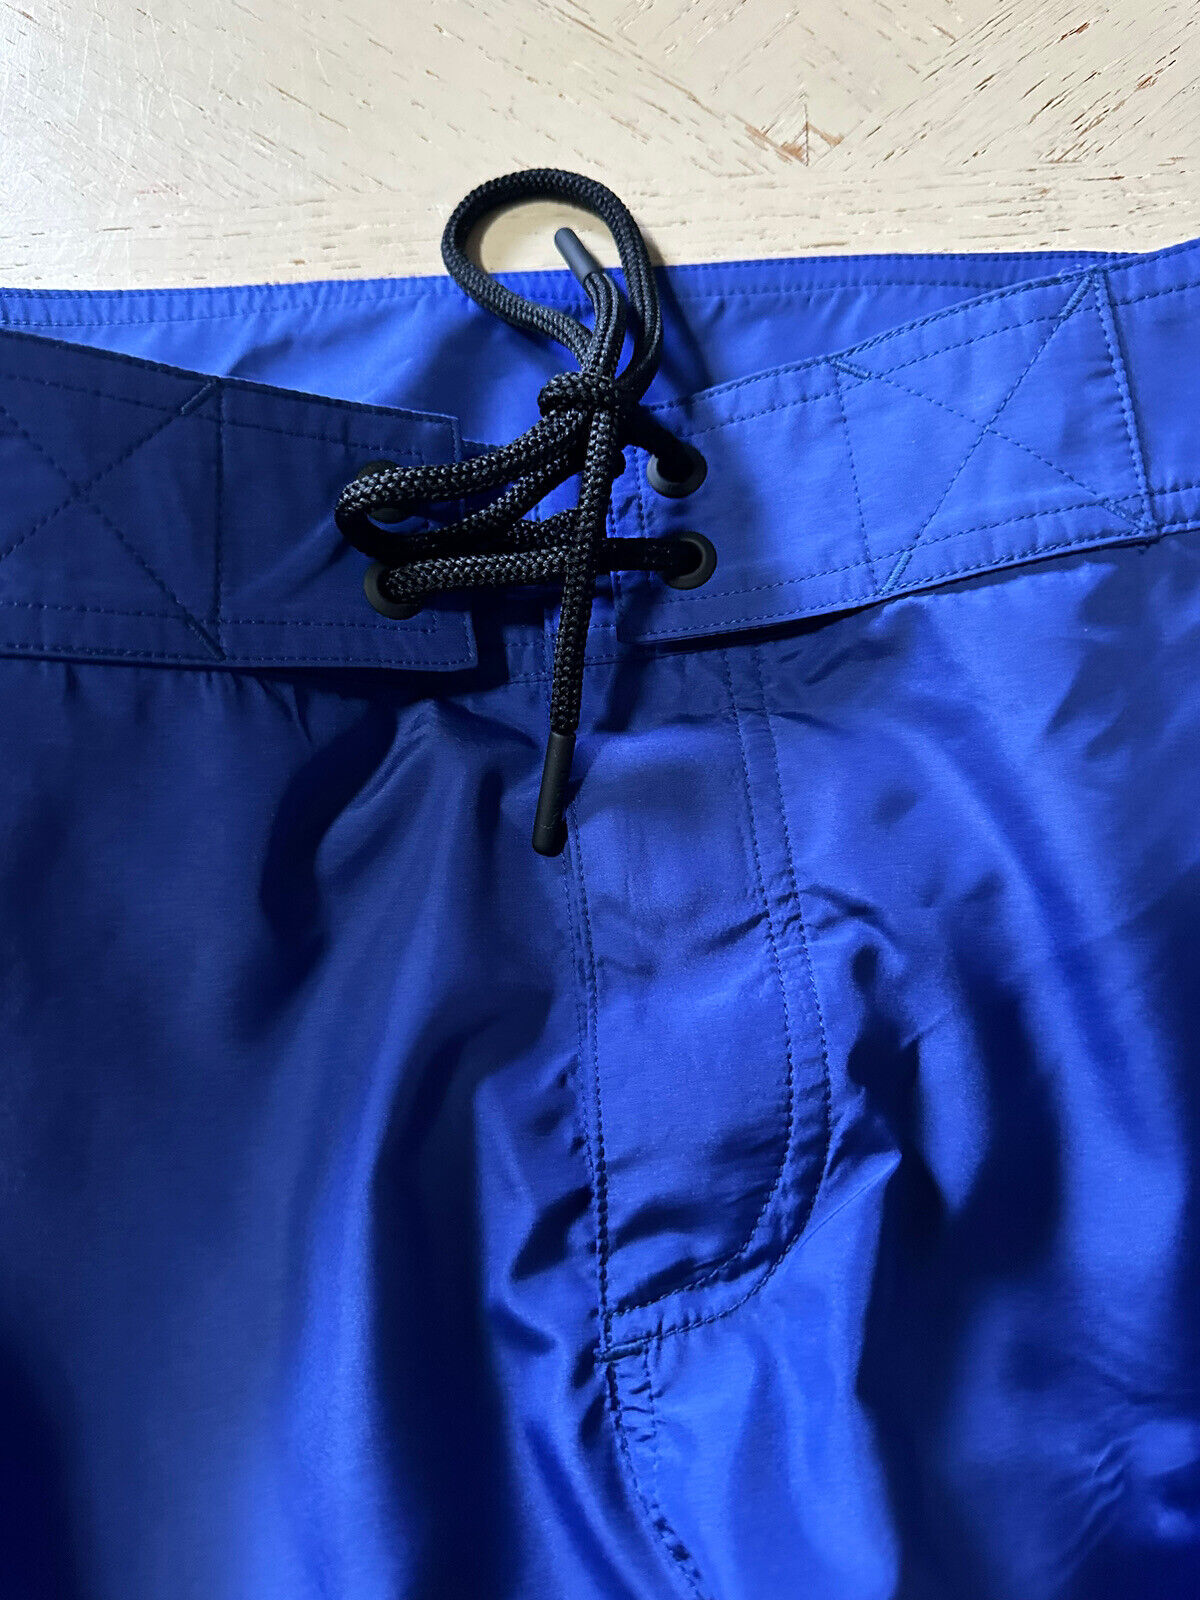 Neu mit Etikett: 790 $ DIOR Kordelzug Boardshorts Badeshorts Blau Größe XL